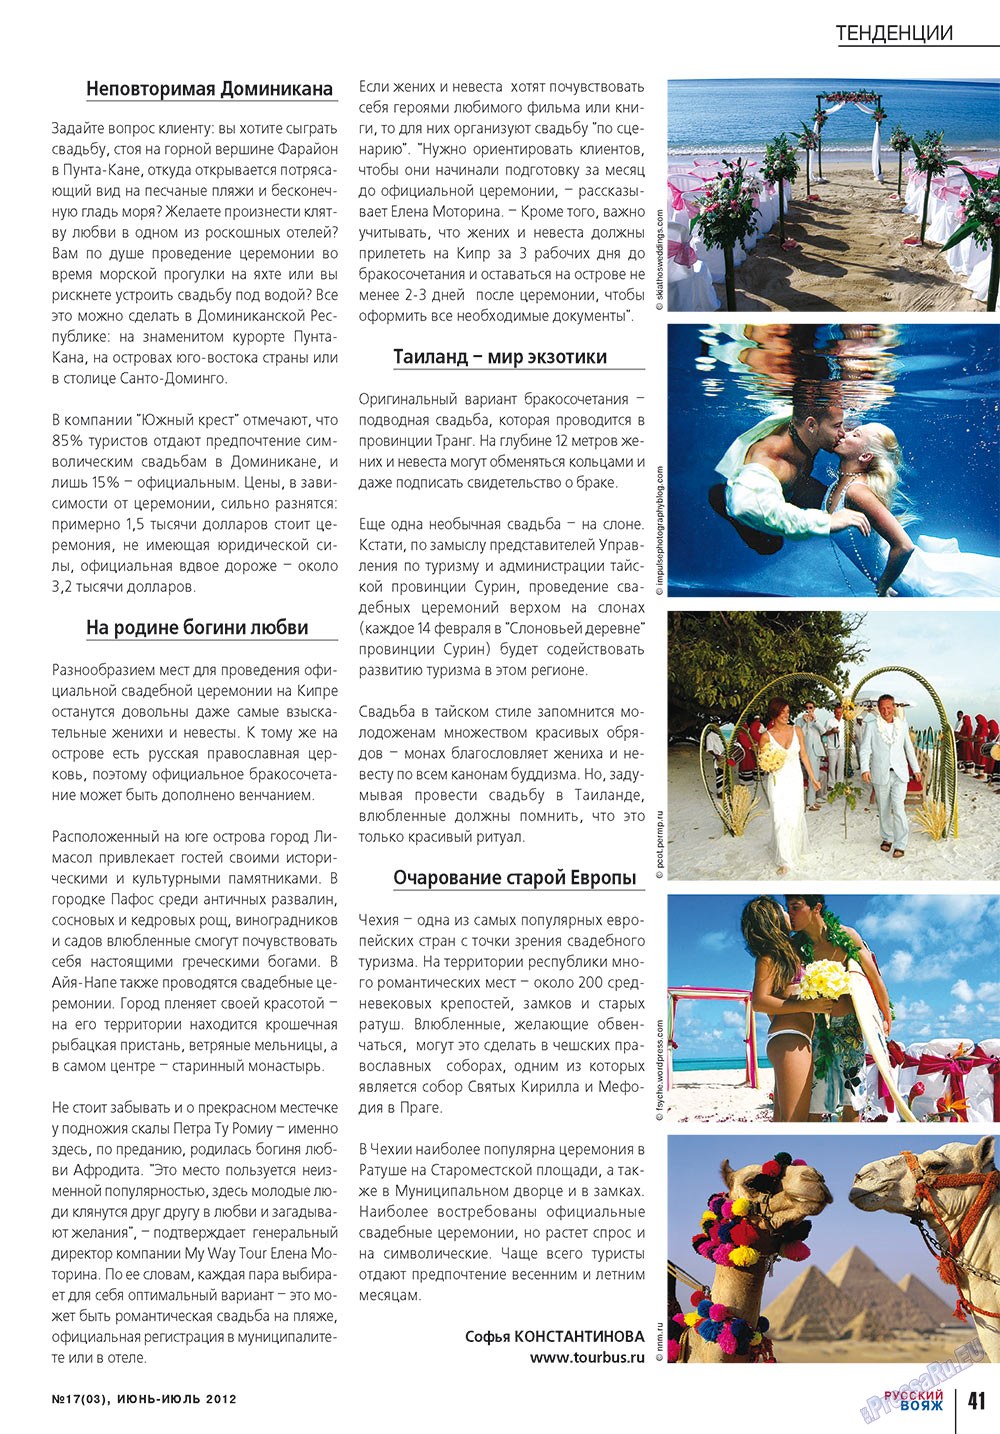 Русский вояж (журнал). 2012 год, номер 17, стр. 41